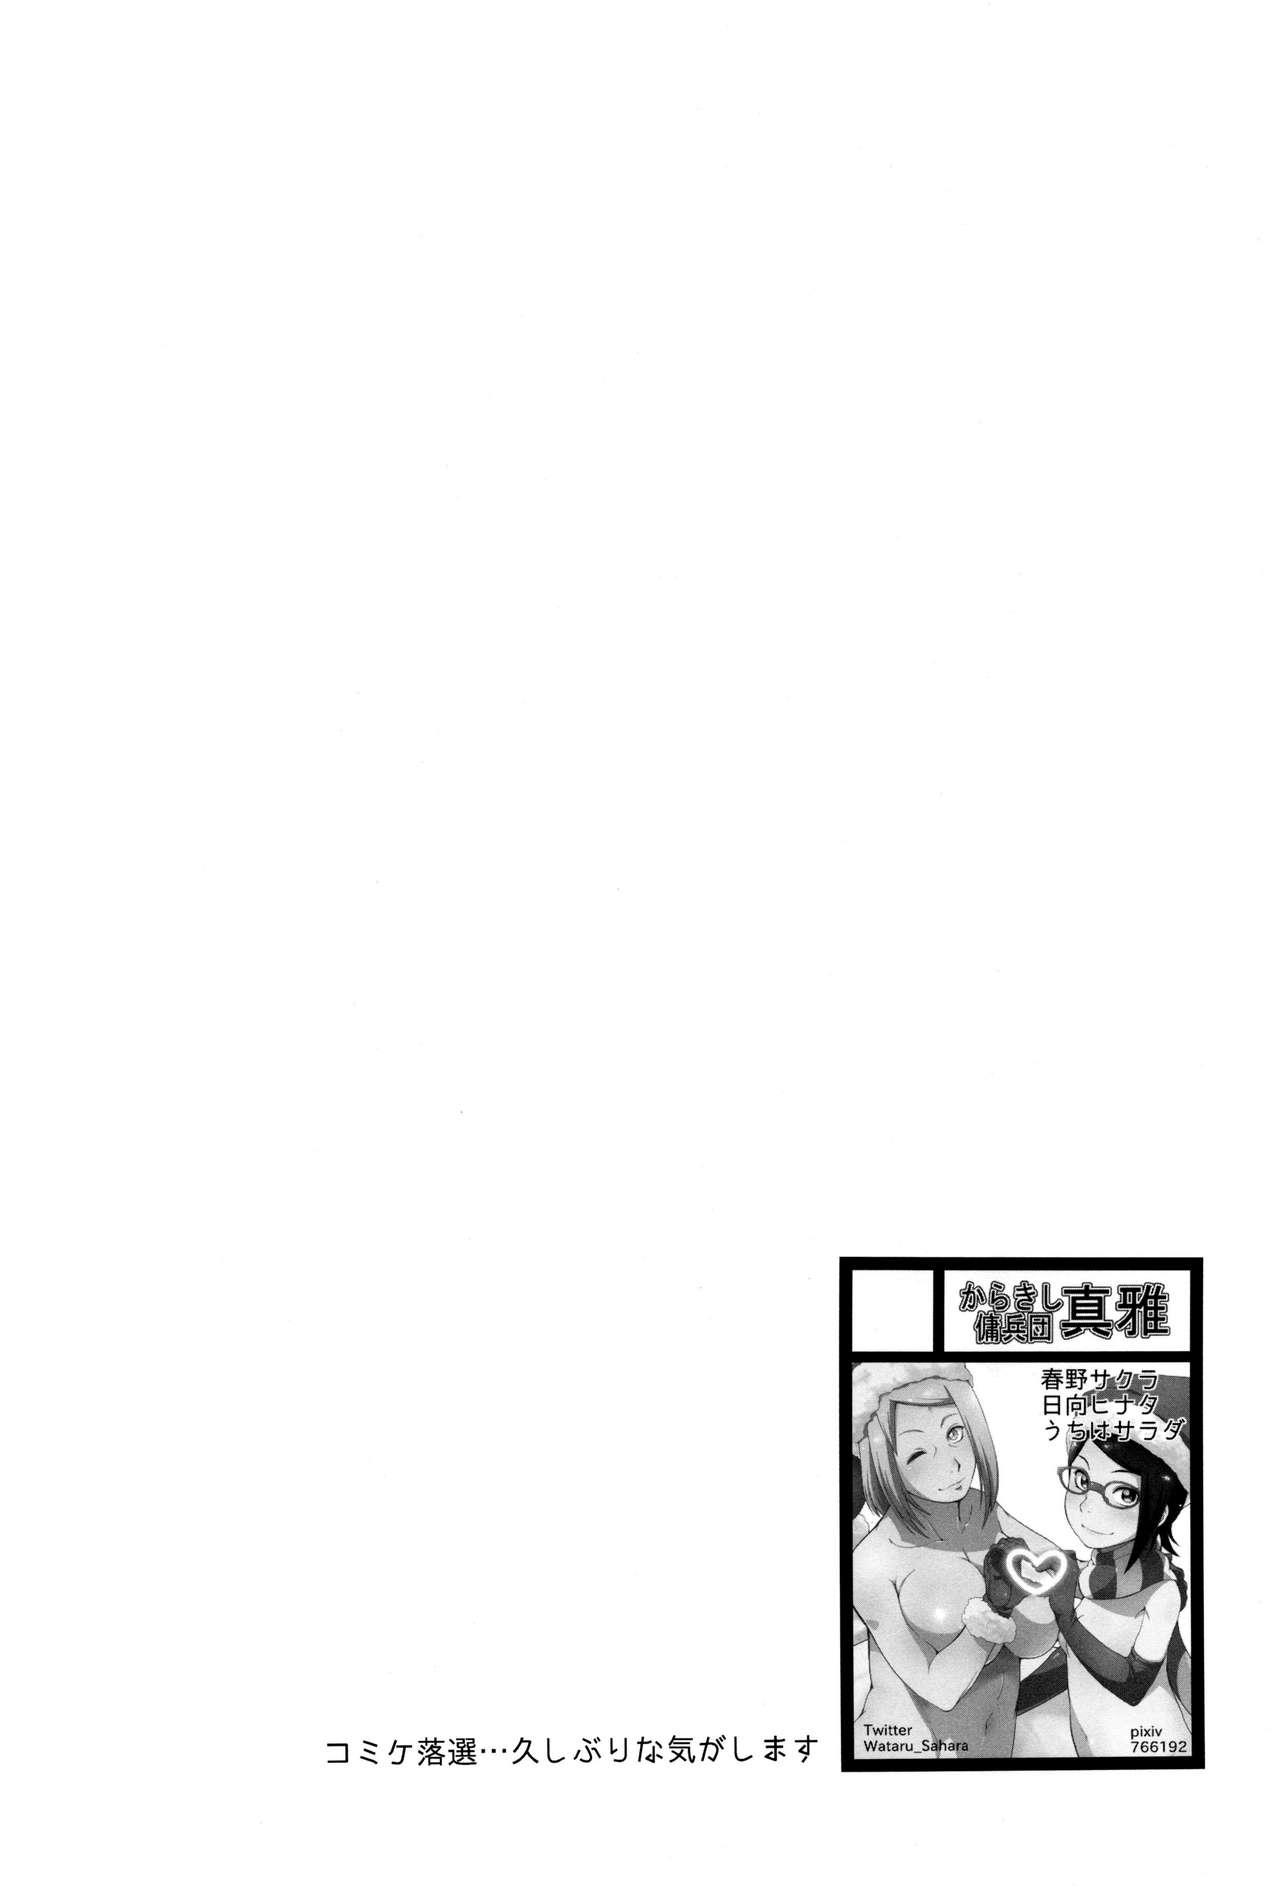 Comendo Botan to Sakura - Naruto Chica - Page 3